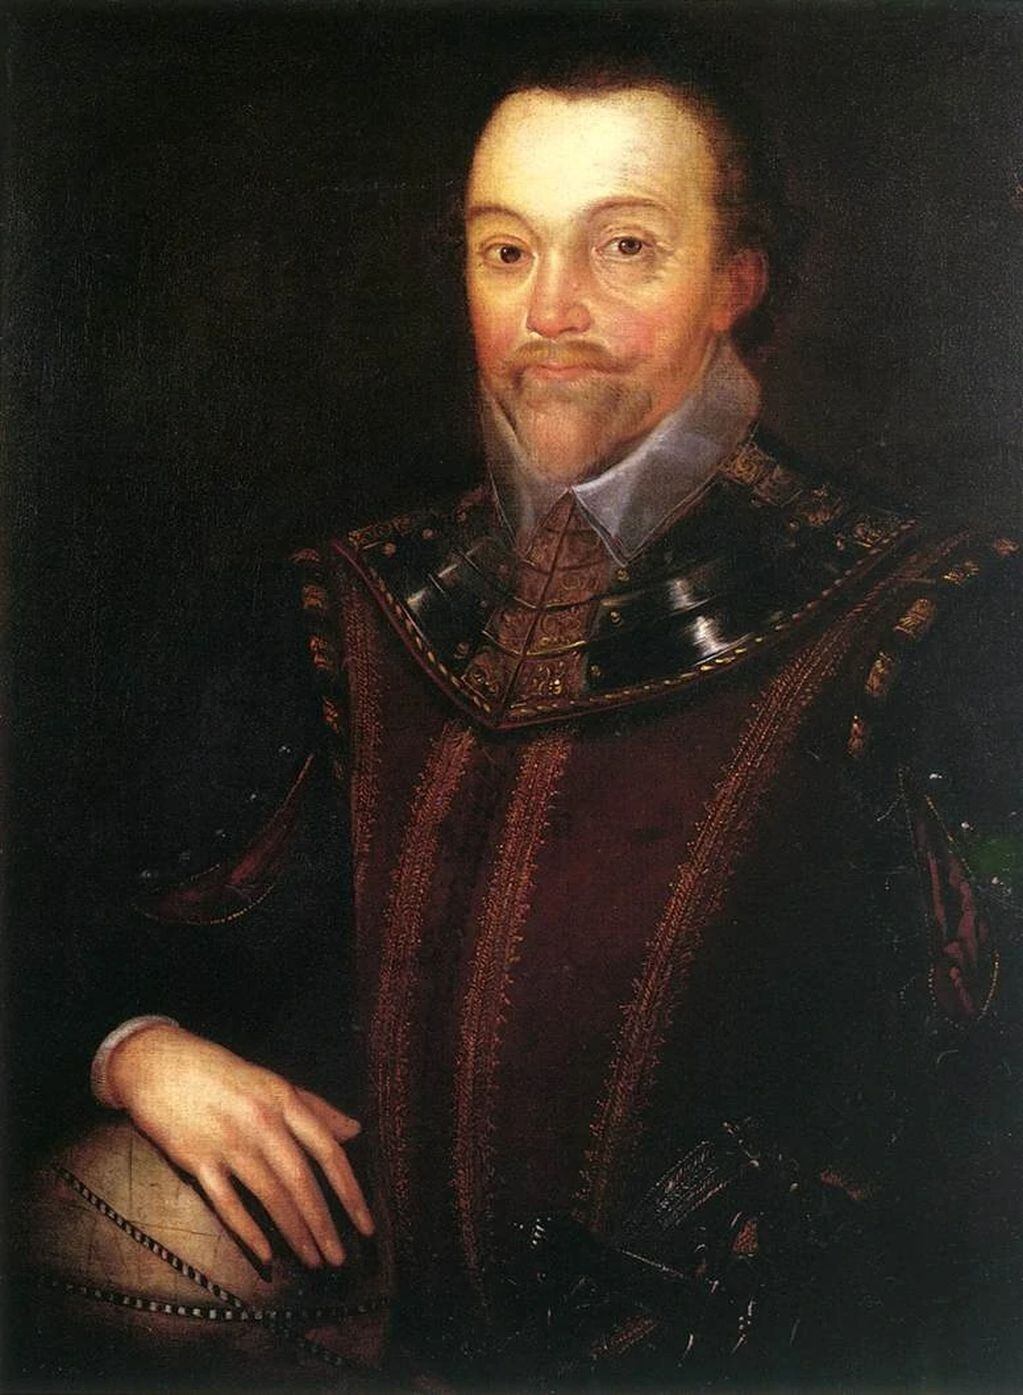 Sir Francis Drake, el corsario que lideraba expediciones en el caribe encomendado por la corona inglesa.